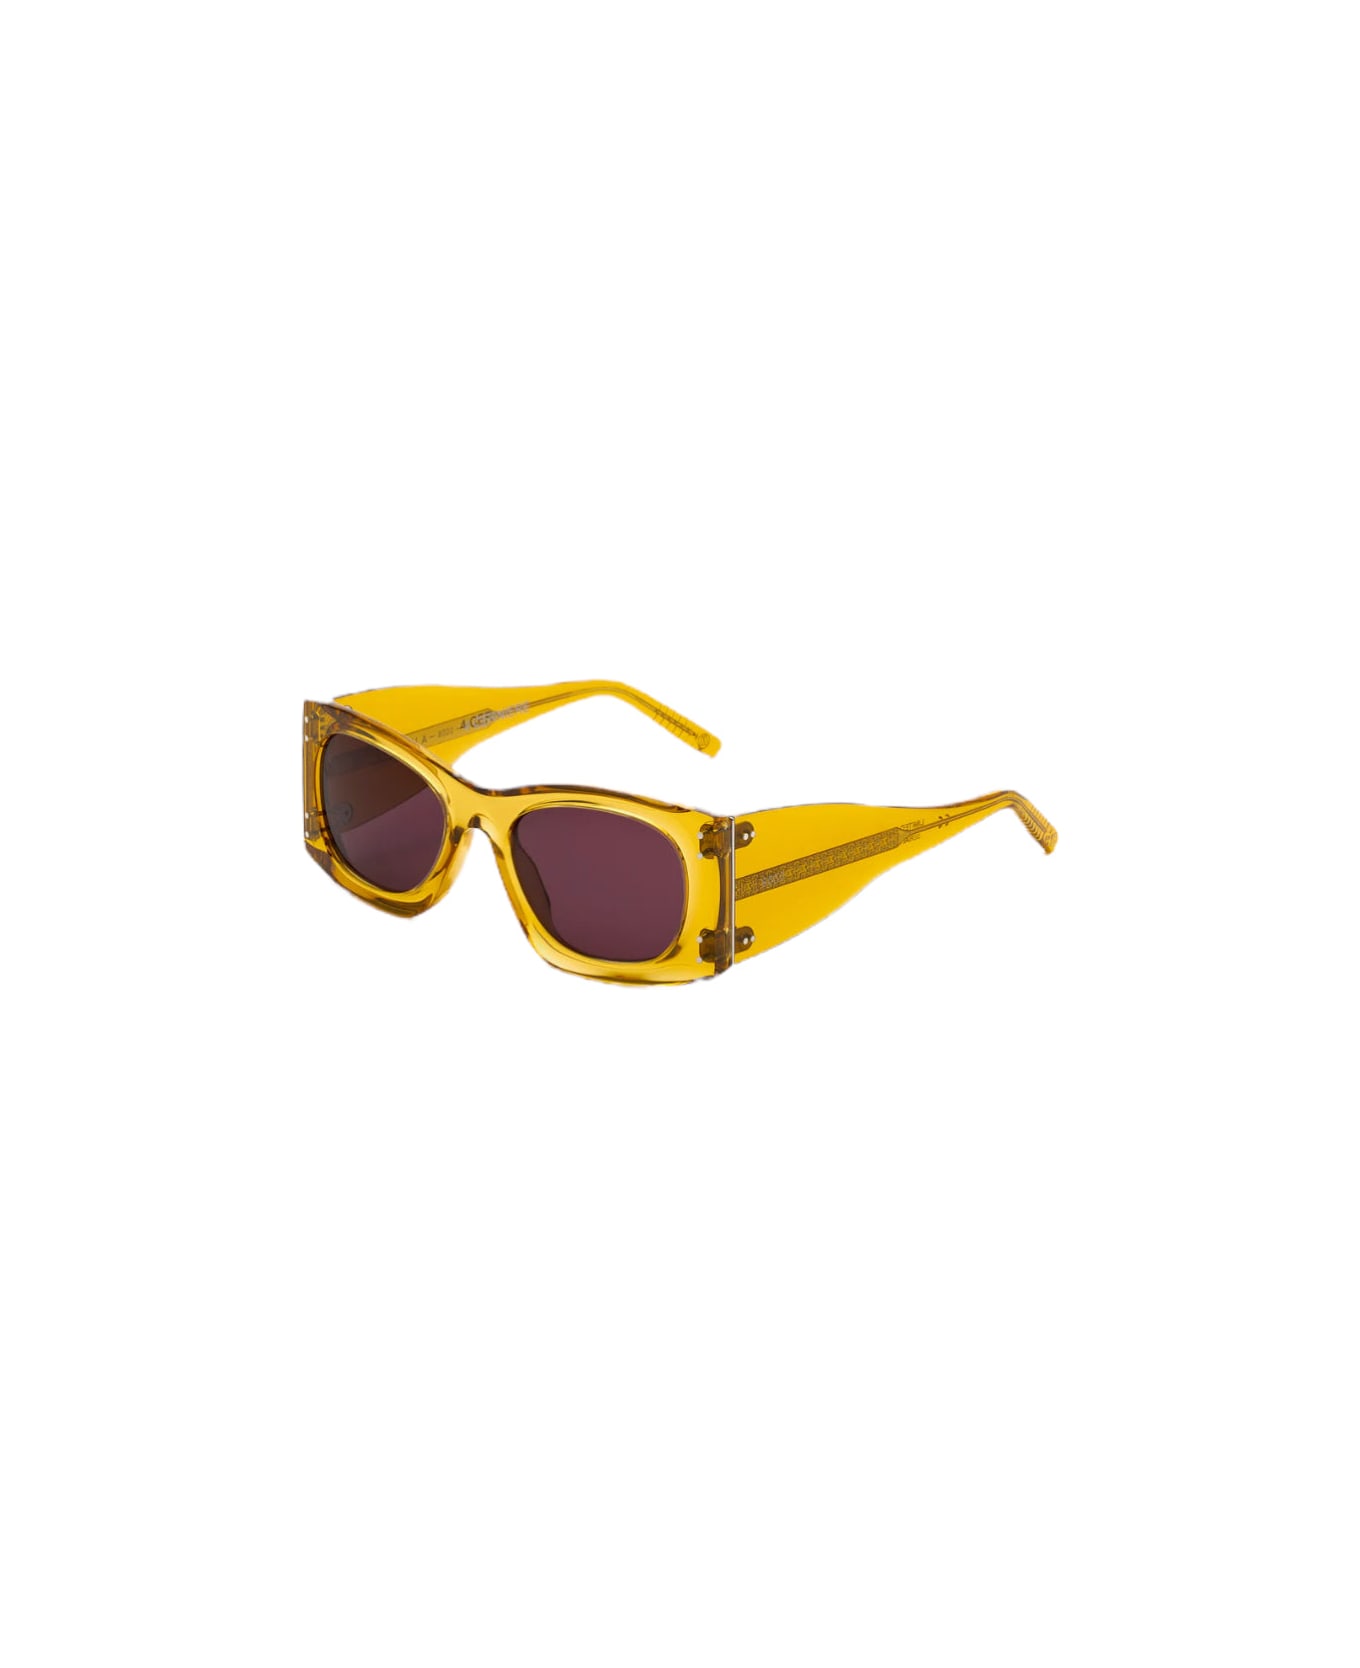 RETROSUPERFUTURE 4 Cerniere - Limited Edition - Amber Sunglasses